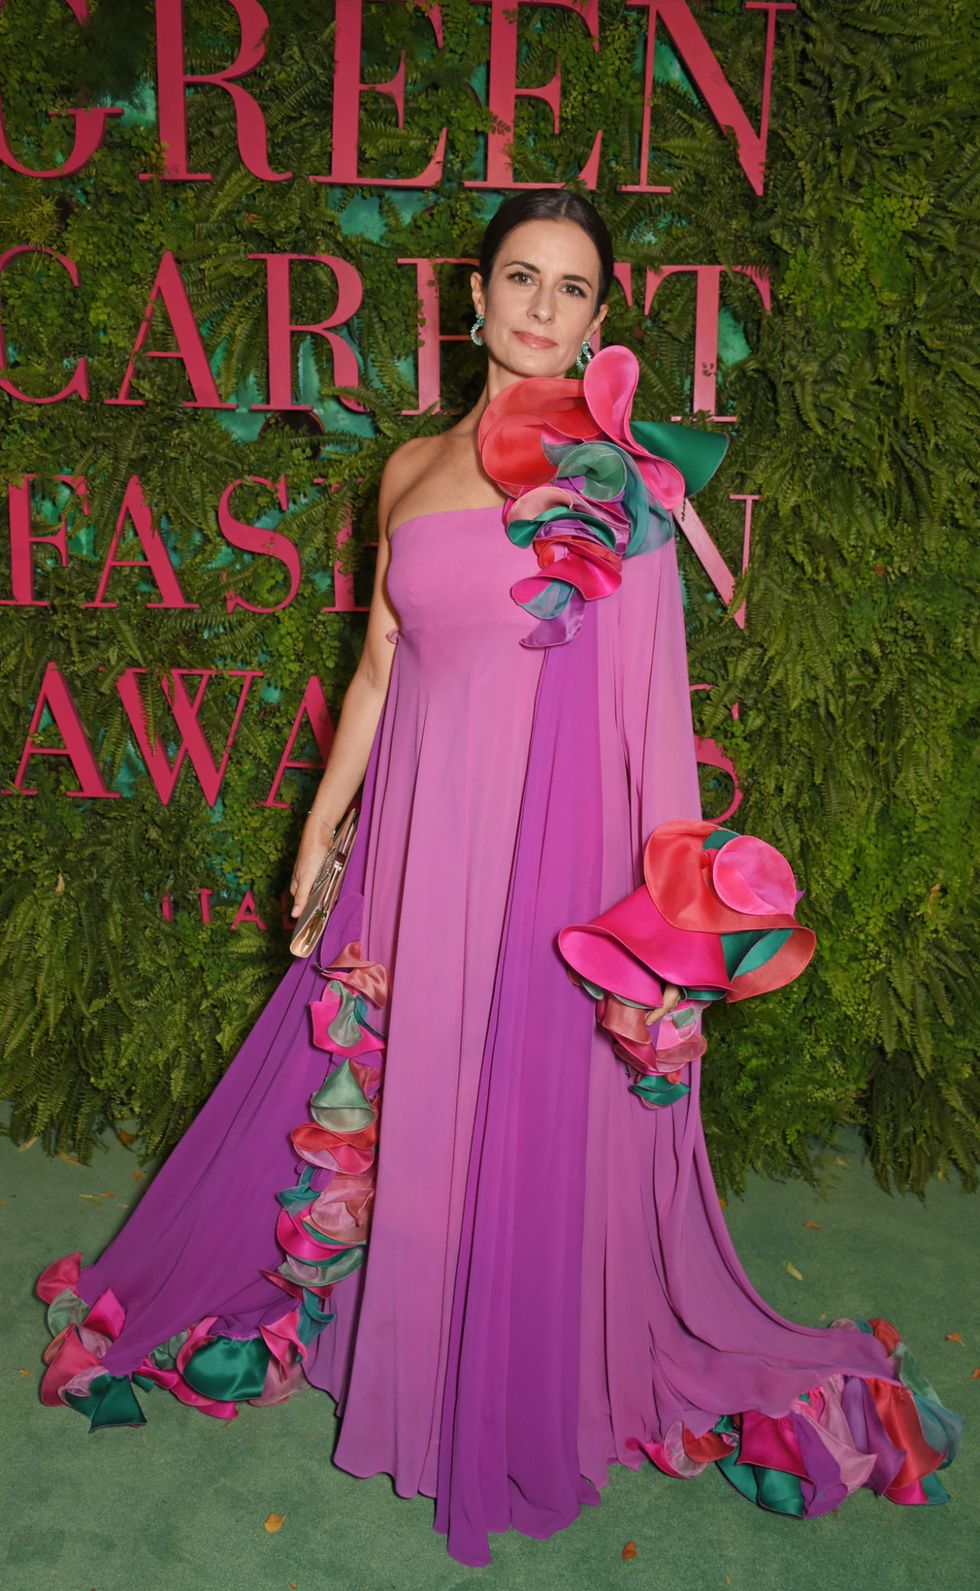 Sul red carpet dei Green Carpet Challenge Fashion Awards al Teatro alla Scala di Milano le stelle del fashion world hanno sfilato in onore di una moda etica, consapevole e super glamour: grazie al lavoro della sua madrina, Livia Firth.